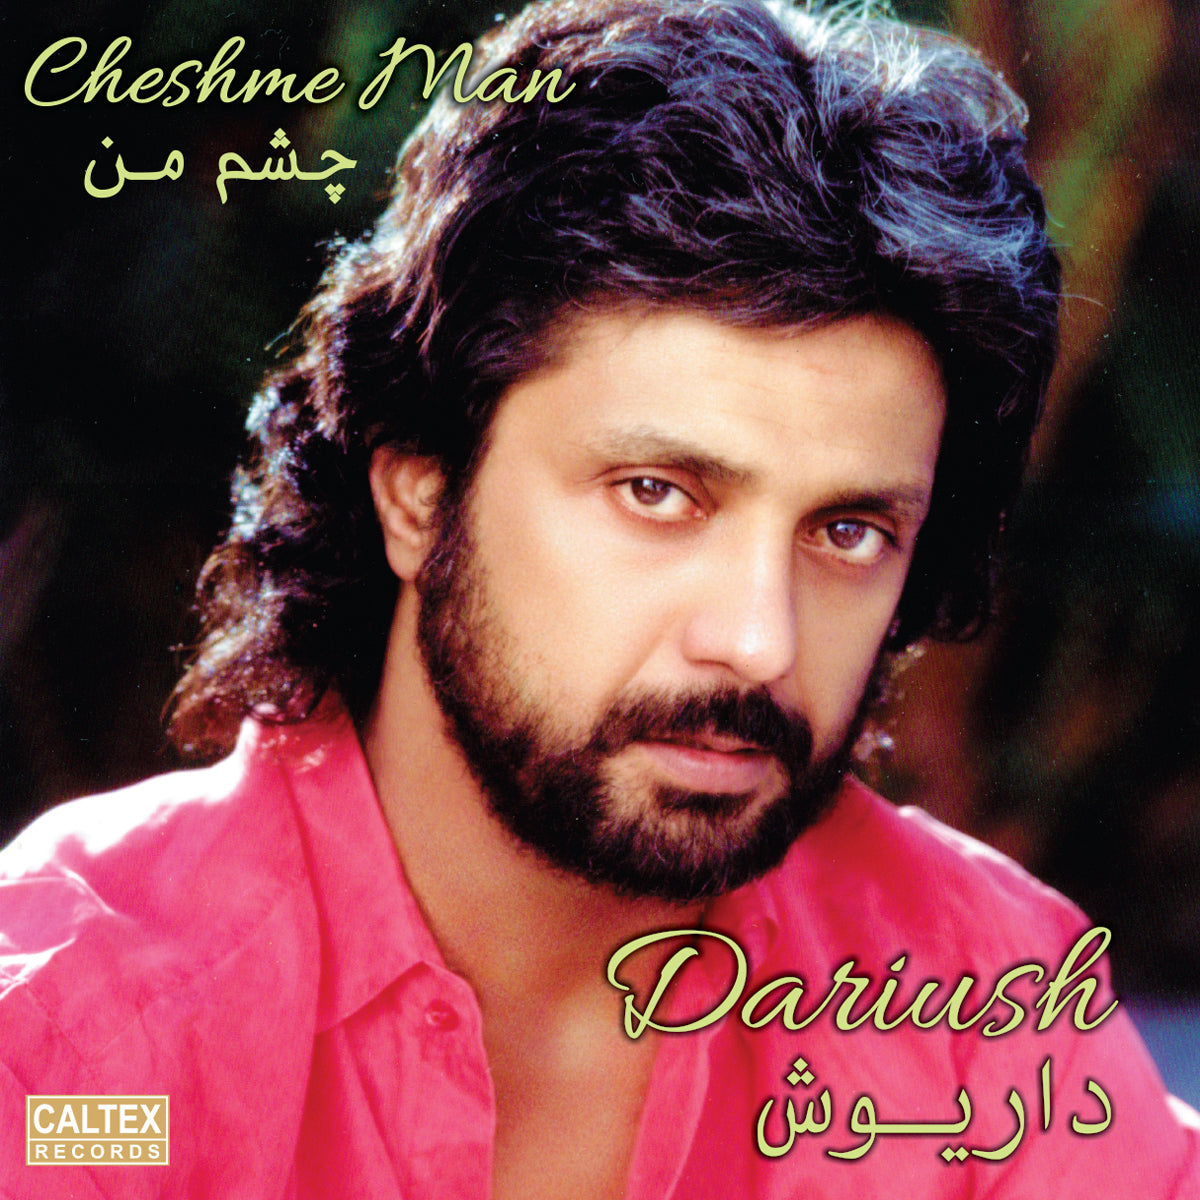 Dariush - Cheshme Man (Vinyl)